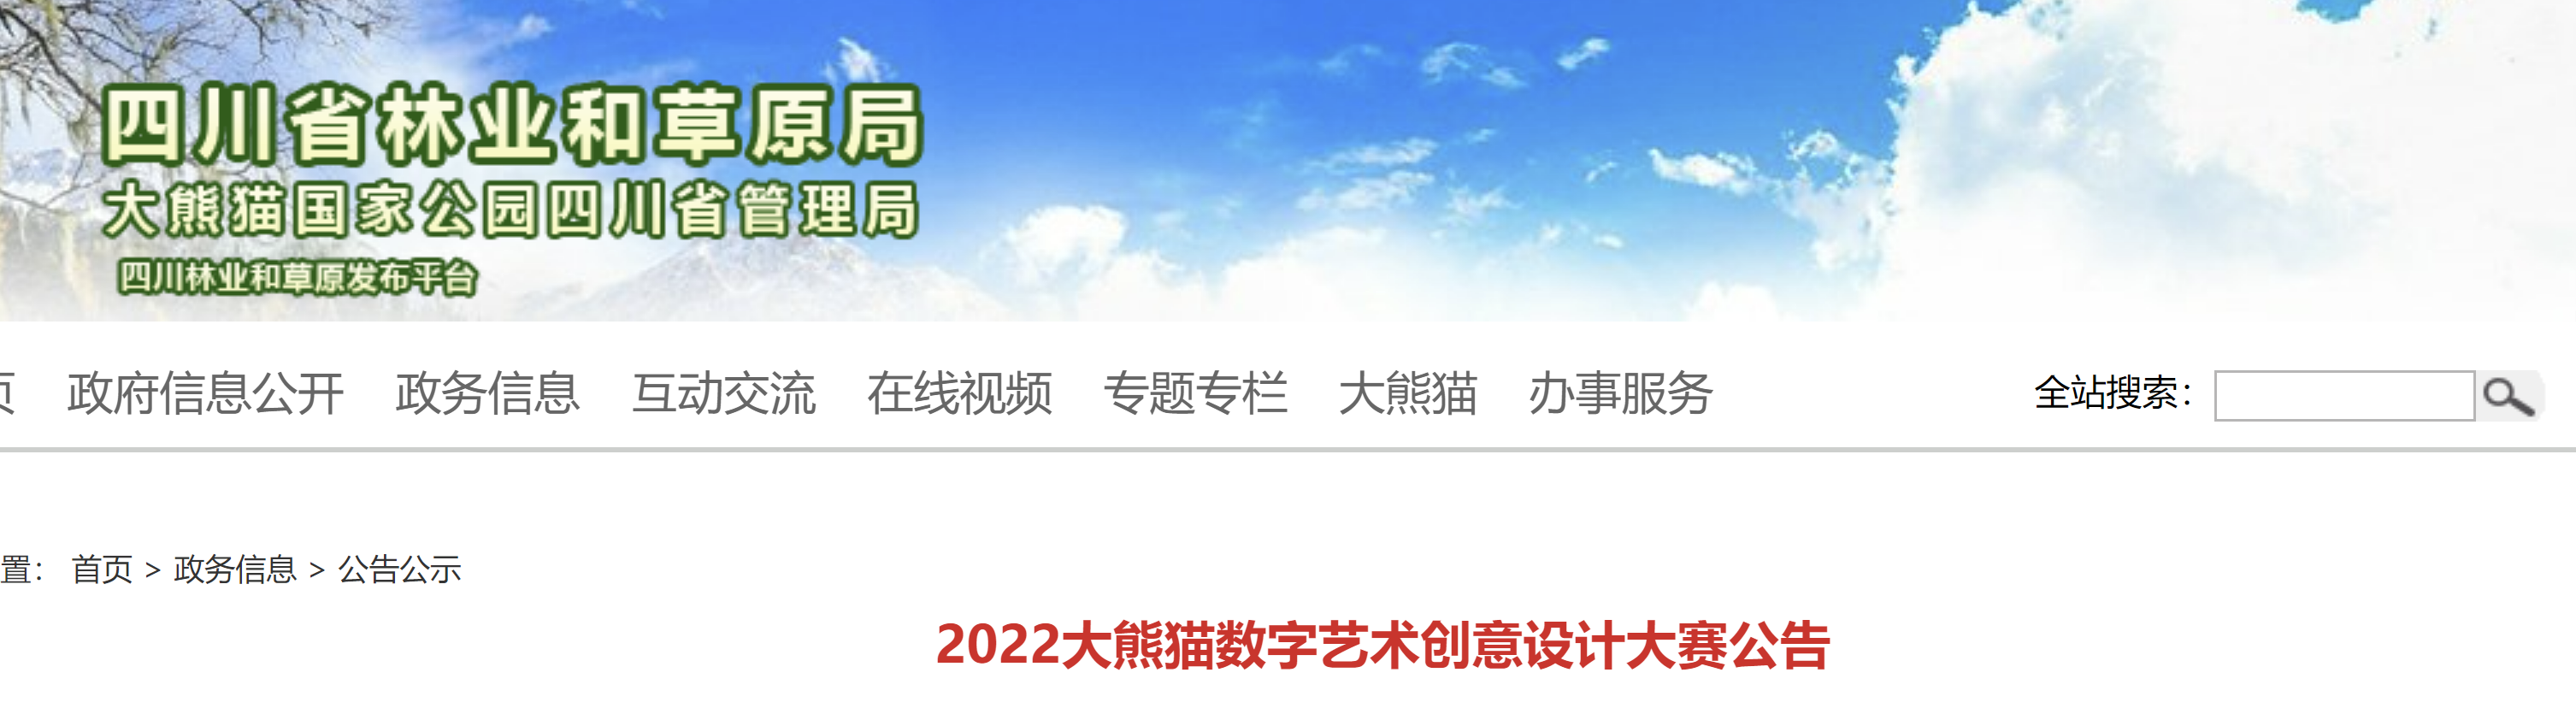 2022大熊猫数字艺术创意设计大赛